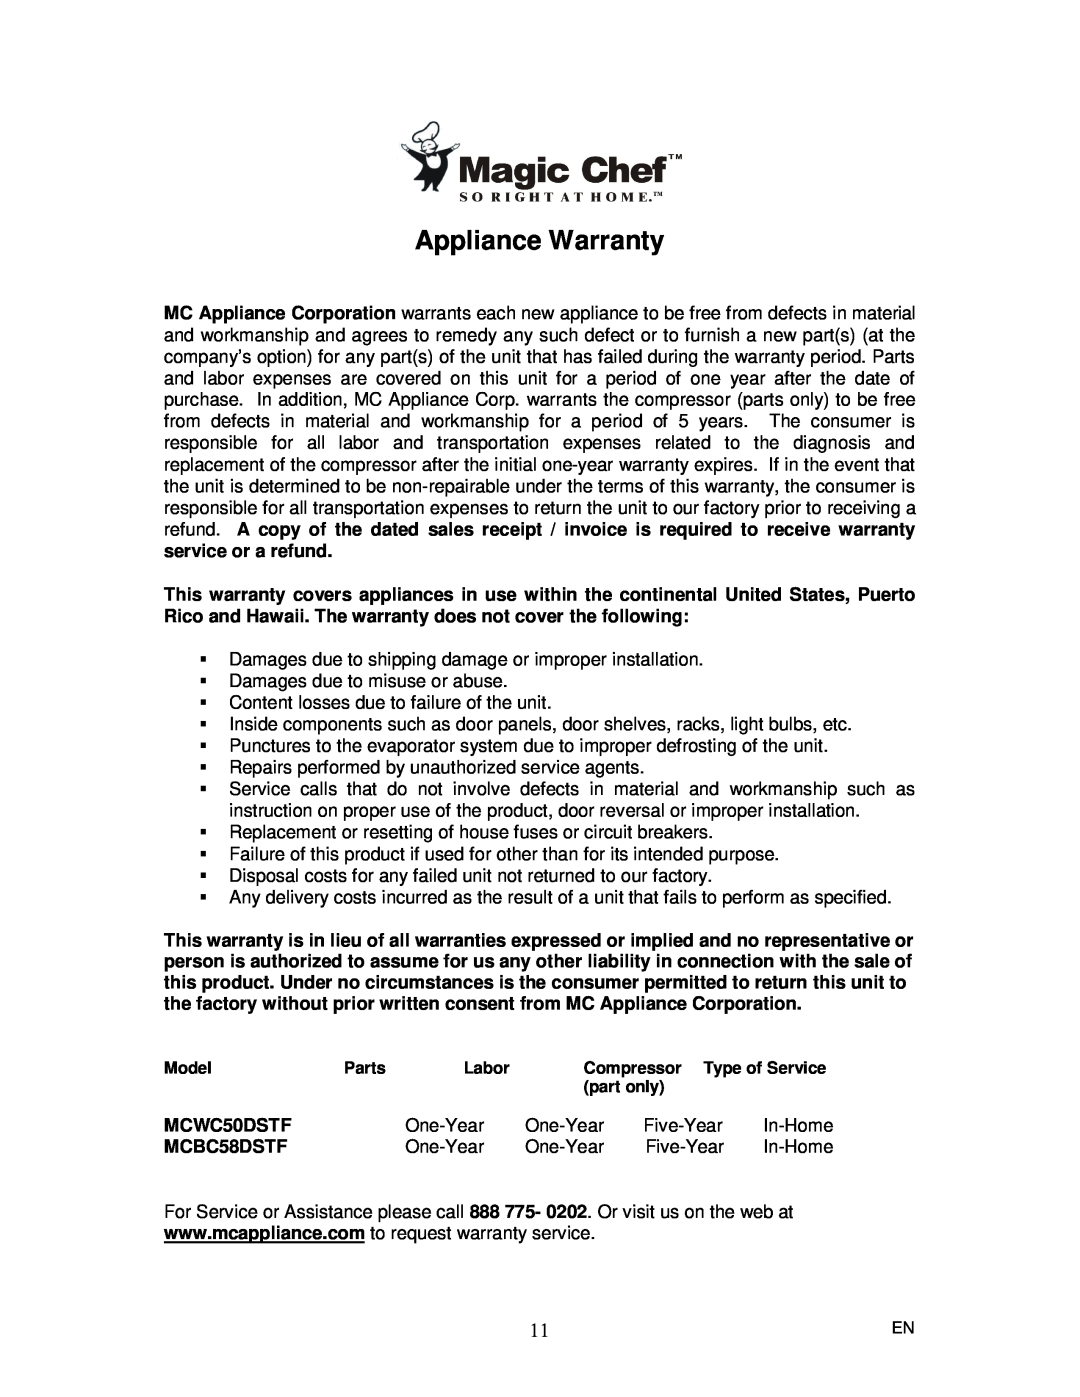 Magic Chef MCBC58DSTF instruction manual Appliance Warranty, MCWC50DSTF 